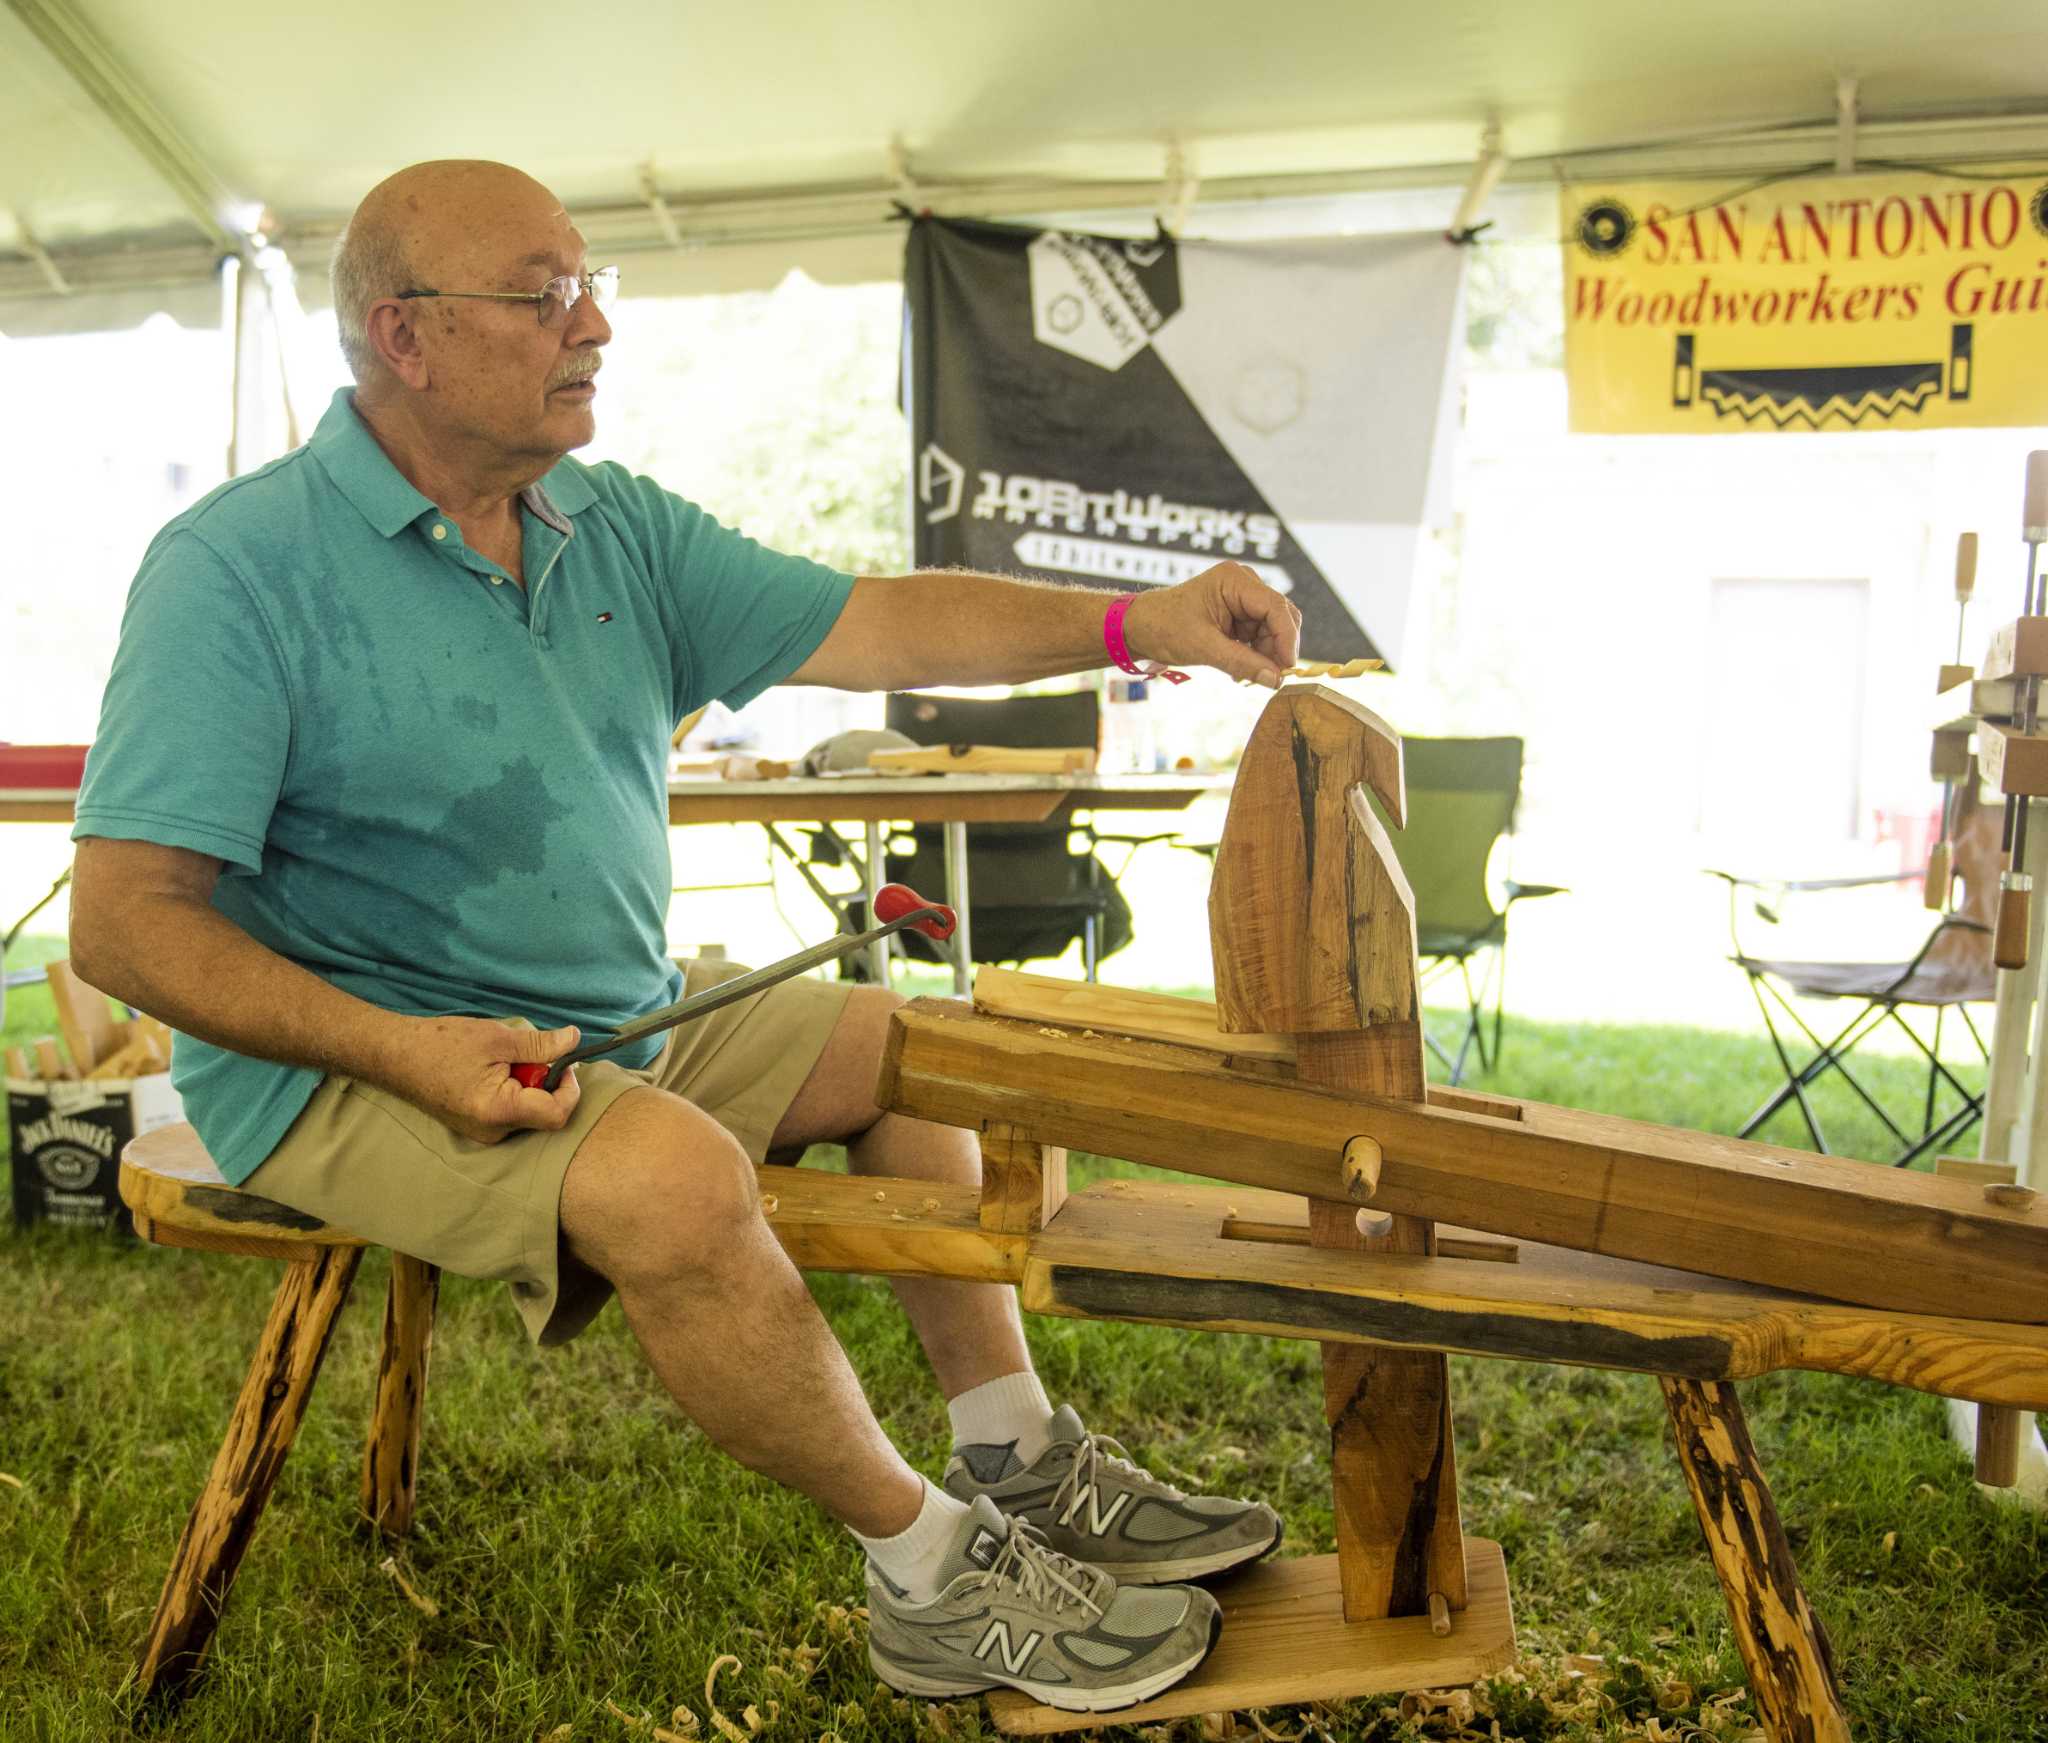 Texas Folklife Festival brings new artisans to San Antonio